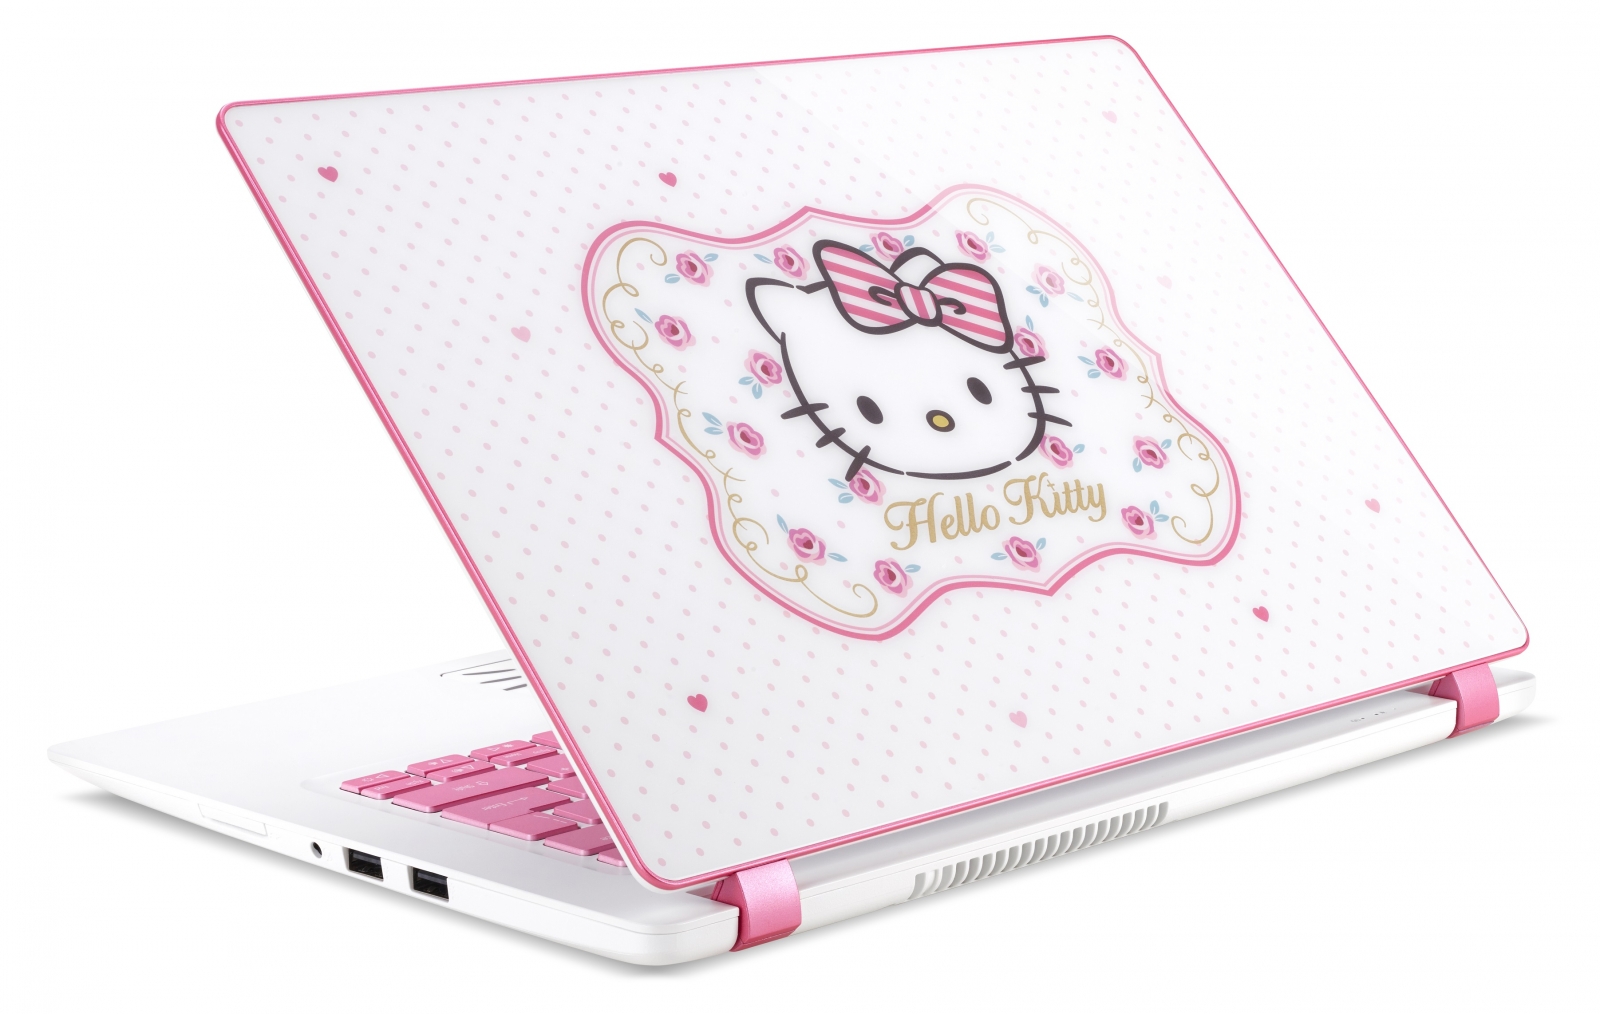 Acer Hello Kitty Laptop 